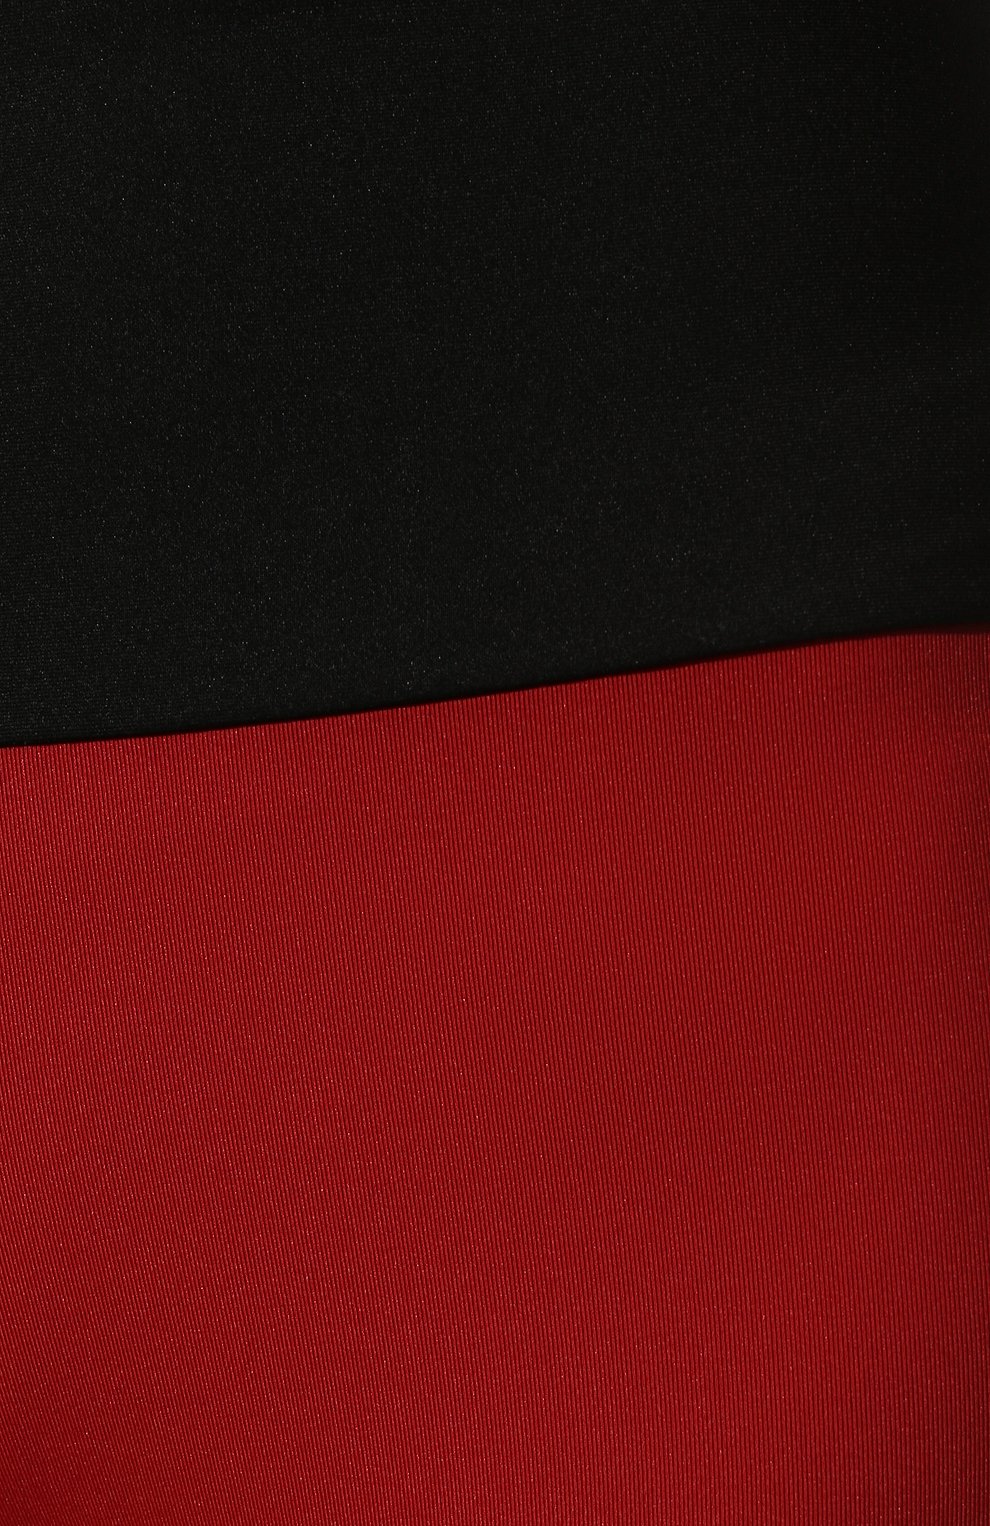 Женские леггинсы DEHA разноцветного цвета, арт. B74776 | Фото 5 (Женское Кросс-КТ: Леггинсы-одежда, Леггинсы-спорт; Длина (брюки, джинсы): Стандартные; Материал внешний: Синтетический материал; Стили: Спорт-шик)